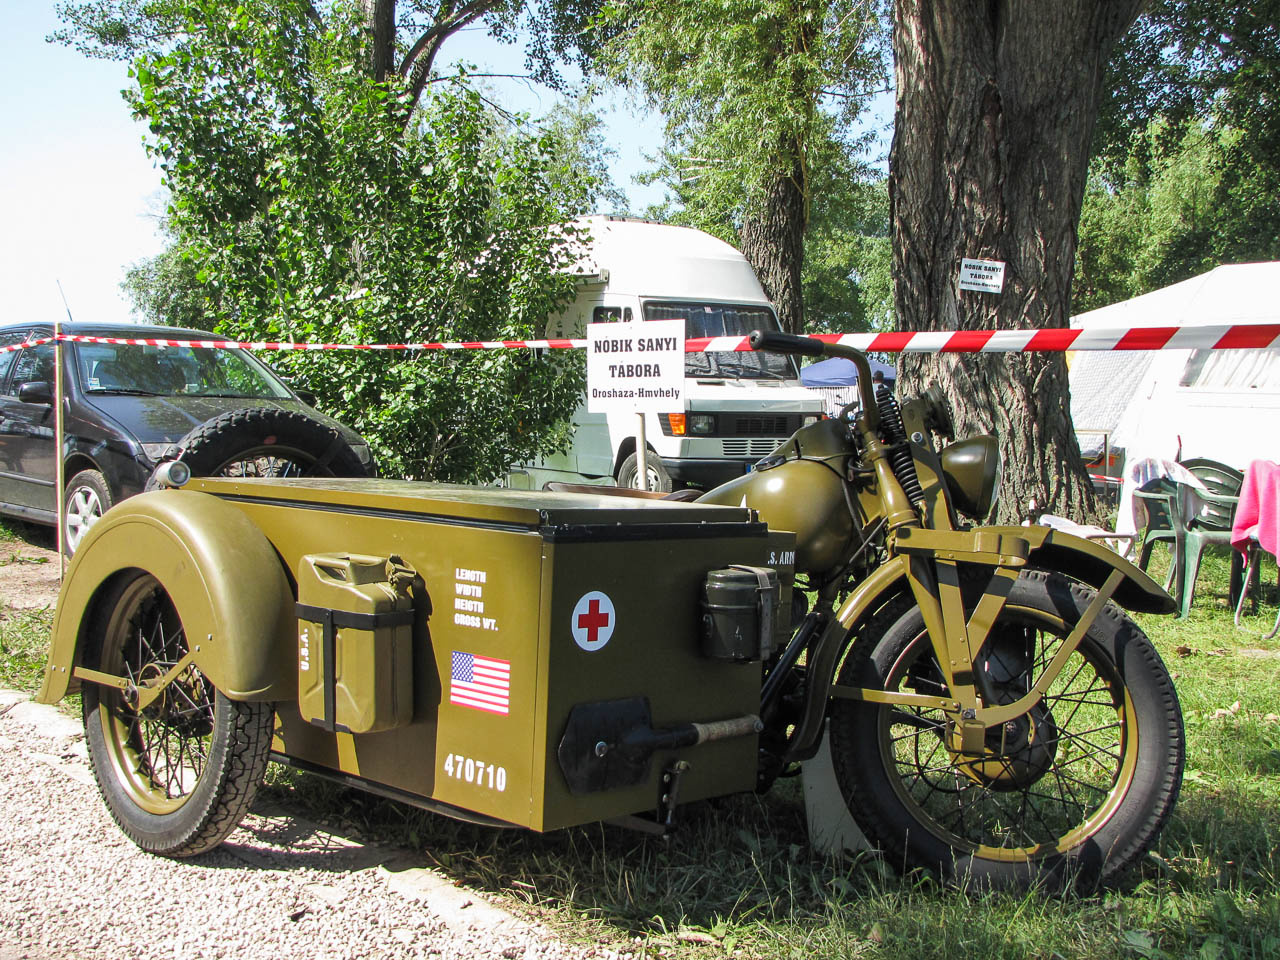 Zirig Árpinak sok szeretettel: egy pofás custom motoron csak dobhat az eredeti csehszlovák PAL lámpa